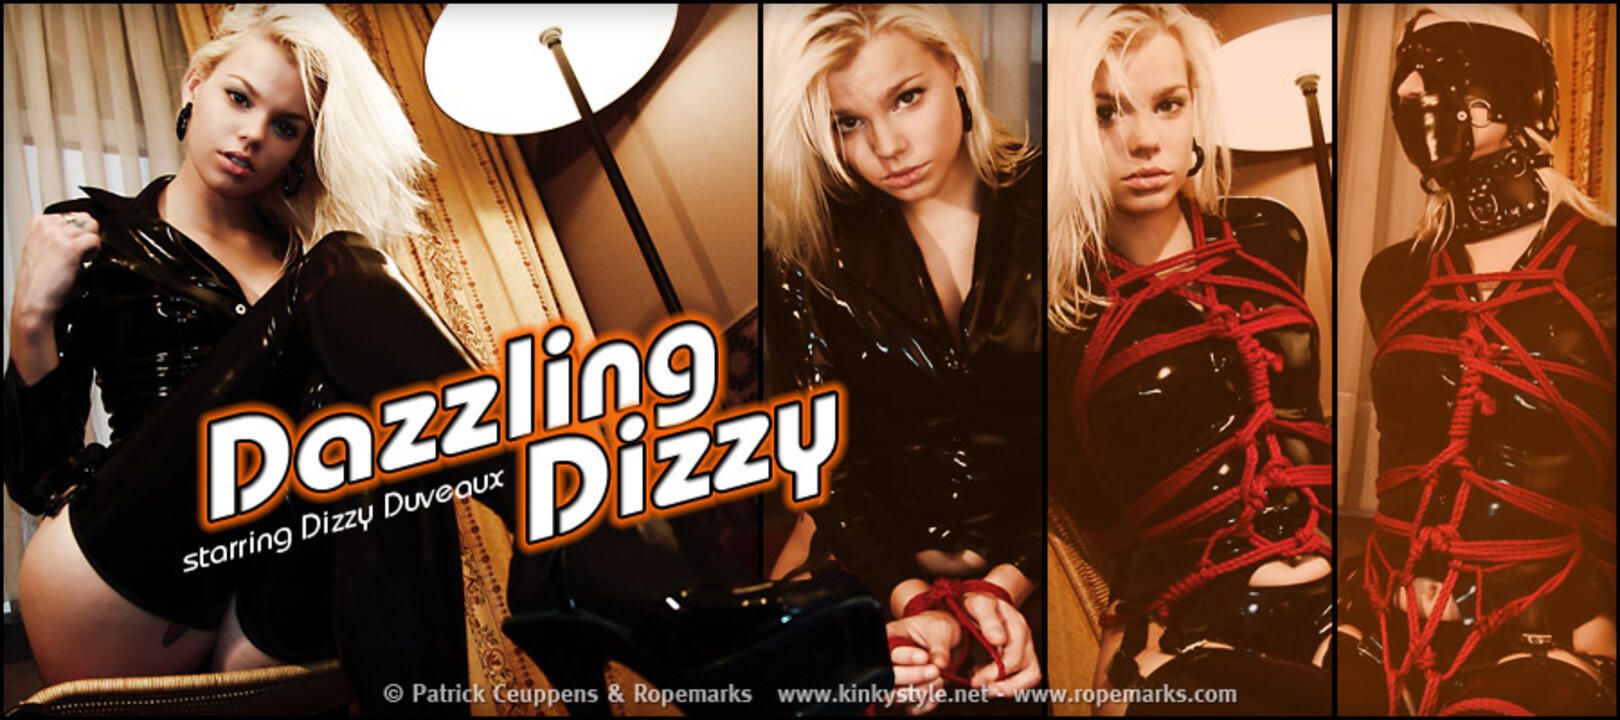 Dazzling Dizzy